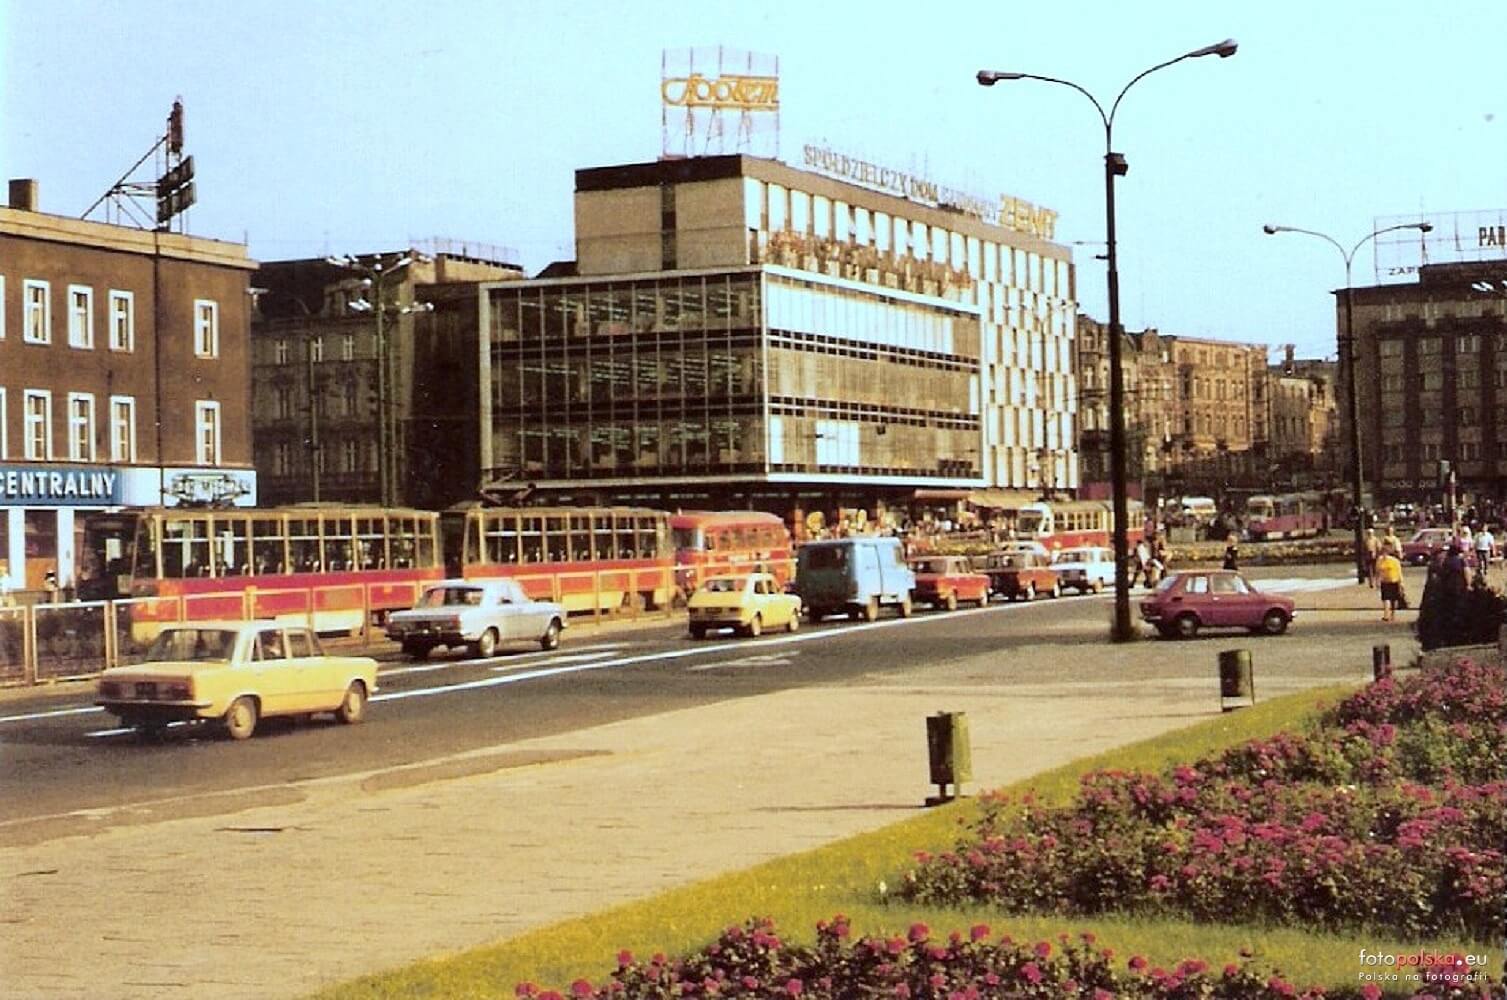 Dom towarowy Zenit 1978